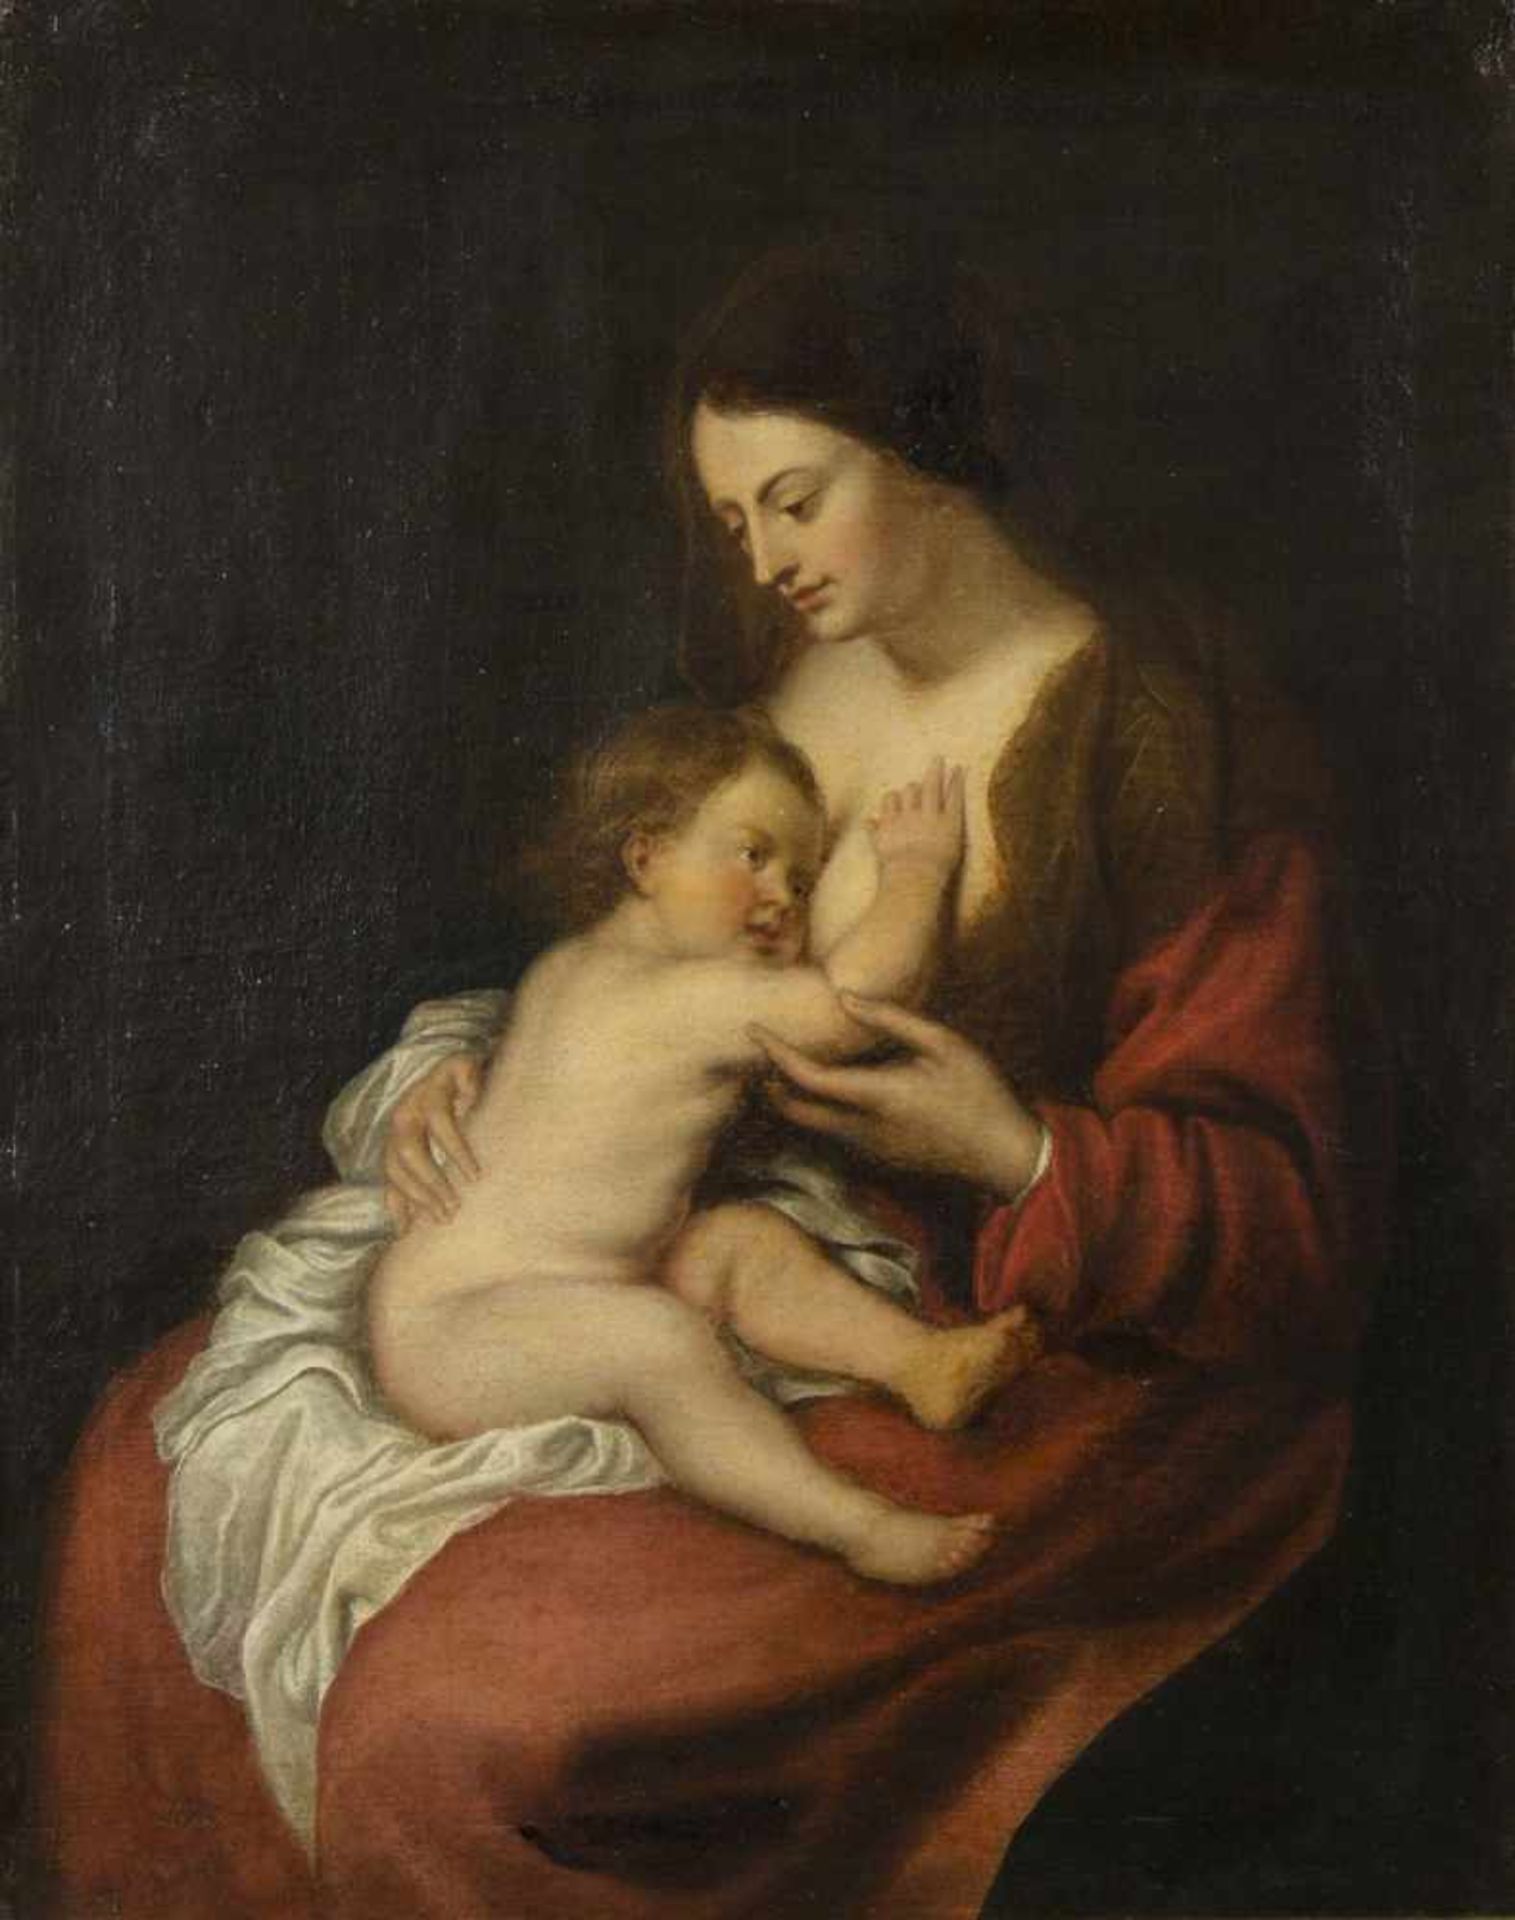 Unbekannt, um 1800Die Jungfrau mit dem Kind nach van Dyck. Öl/Lwd., doubliert. 65 x 51 cm.